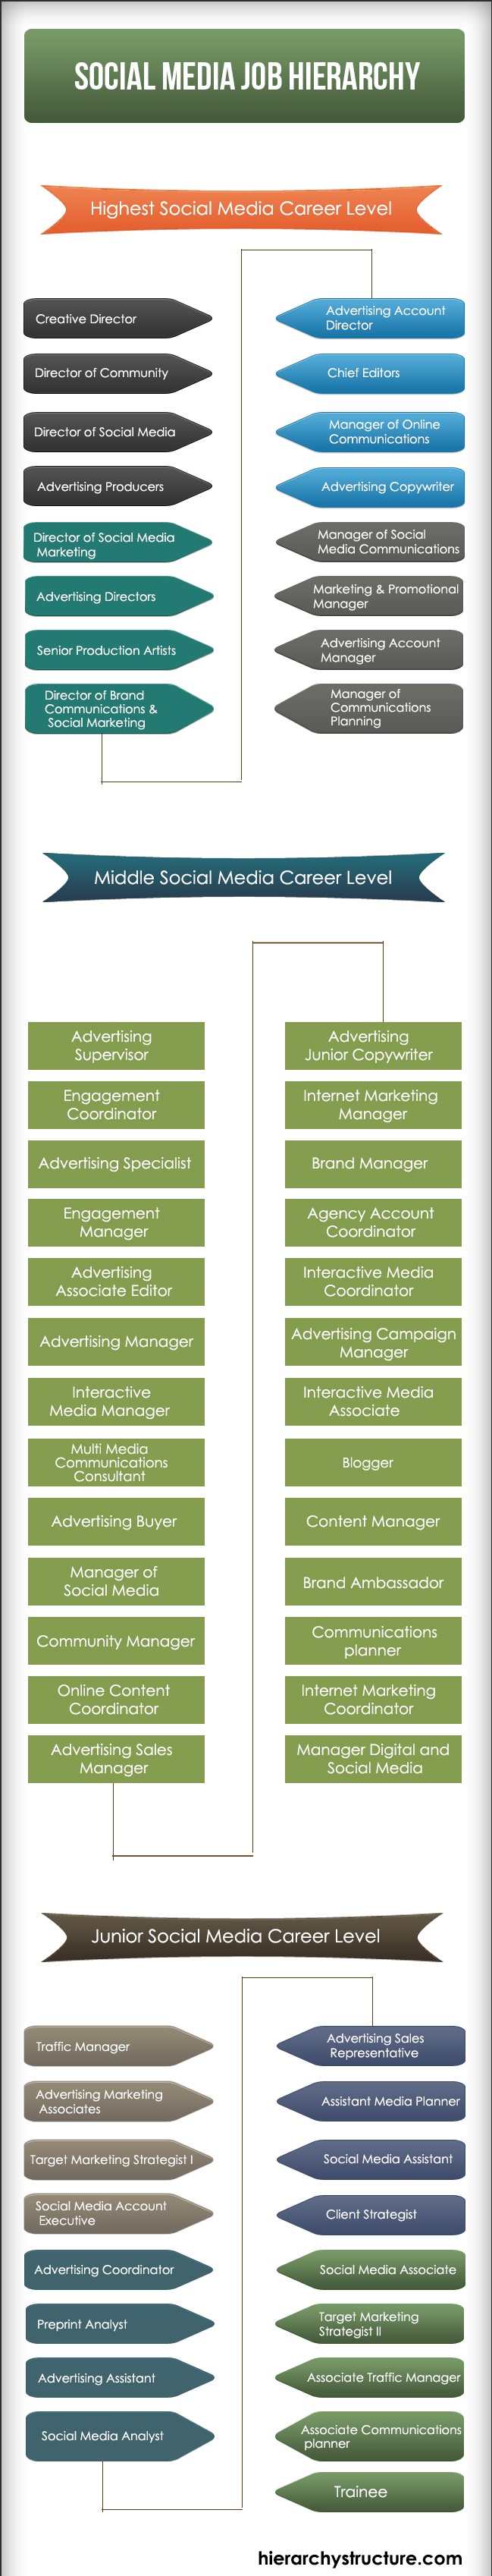 Social Media Job Hierarchy